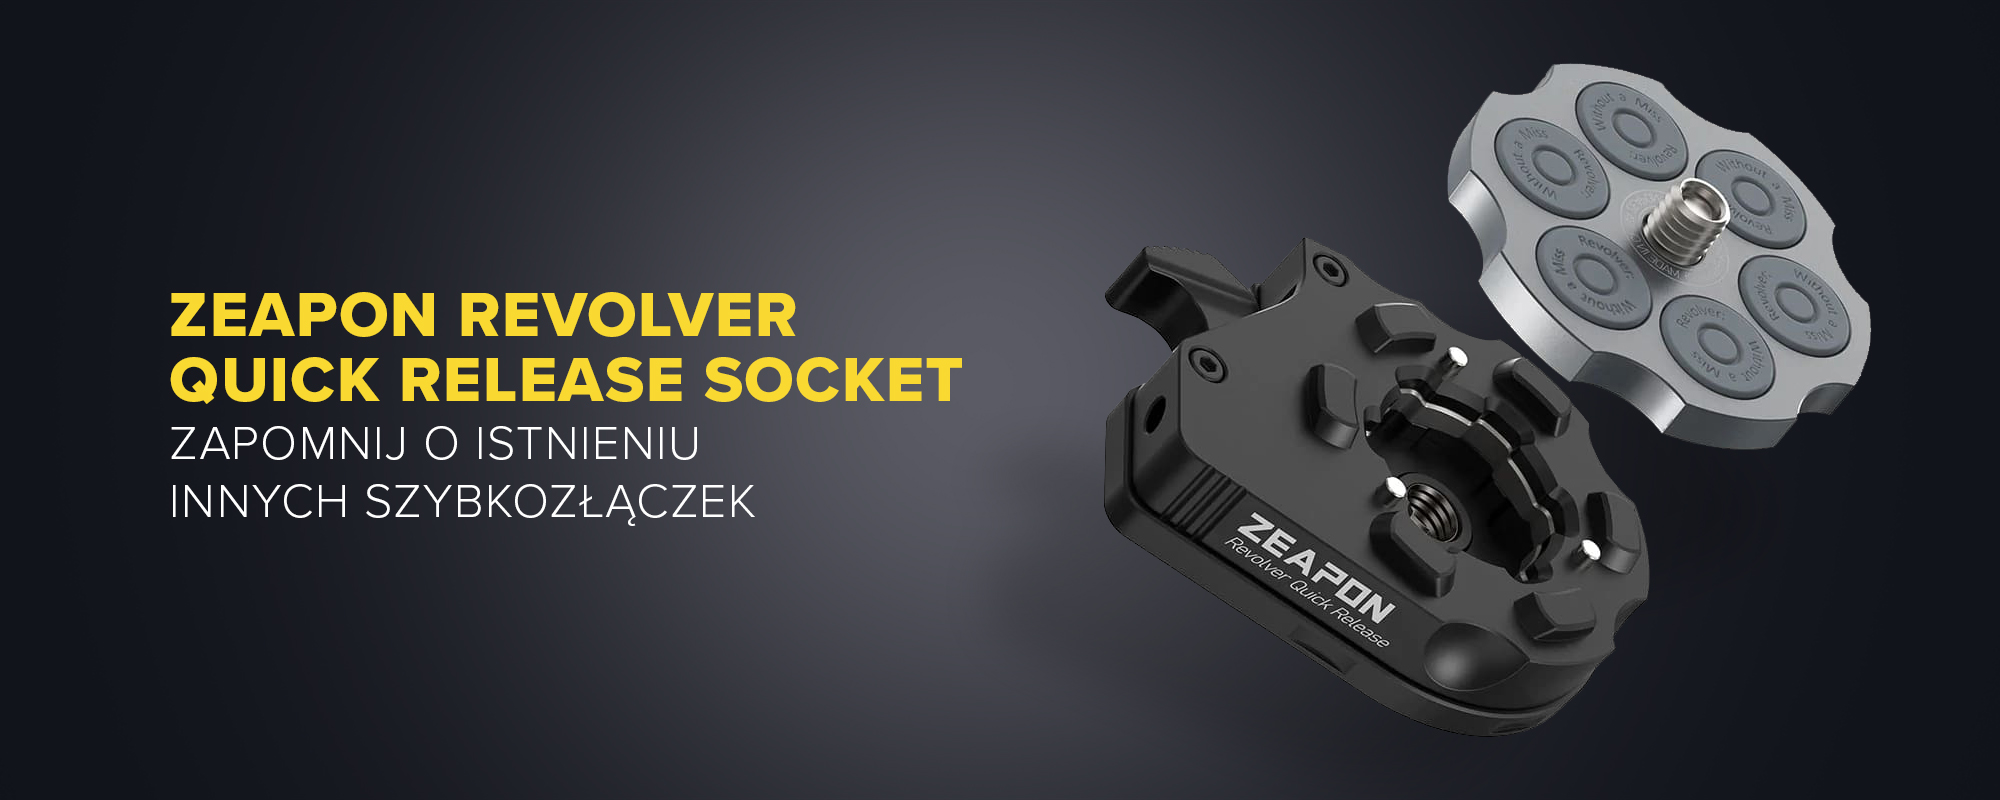 Płytka szybkiego montażu Zeapon Revolver Quick Release Pin - Idealne dopasowanie